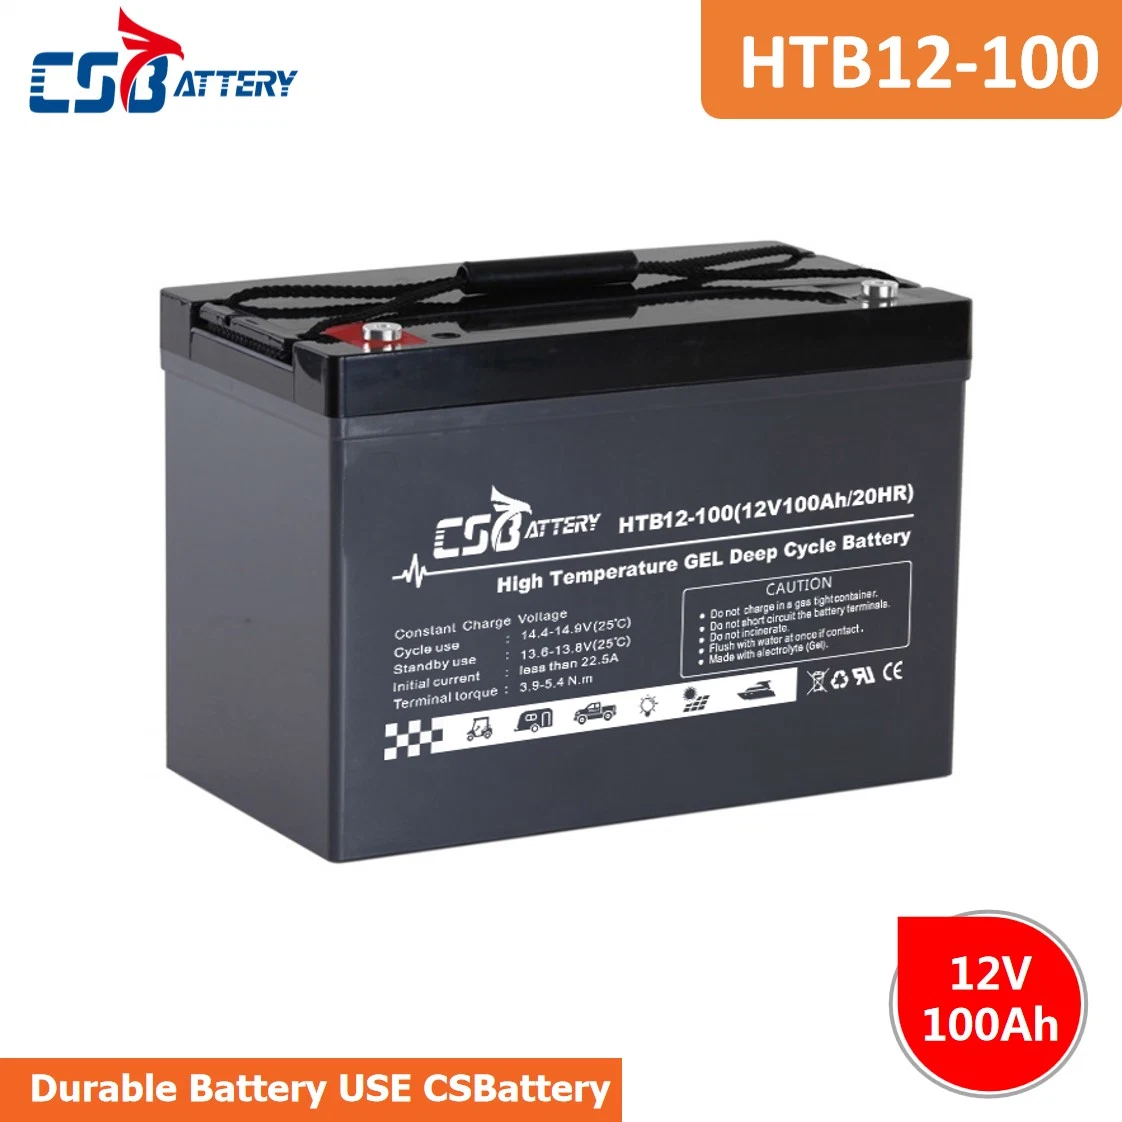 Csbattery 12V100Ah batería de gel inversor solar generador solar de batería UPS mantenimiento gratuito Baterí una larga vida útil de la energía solar/Boo